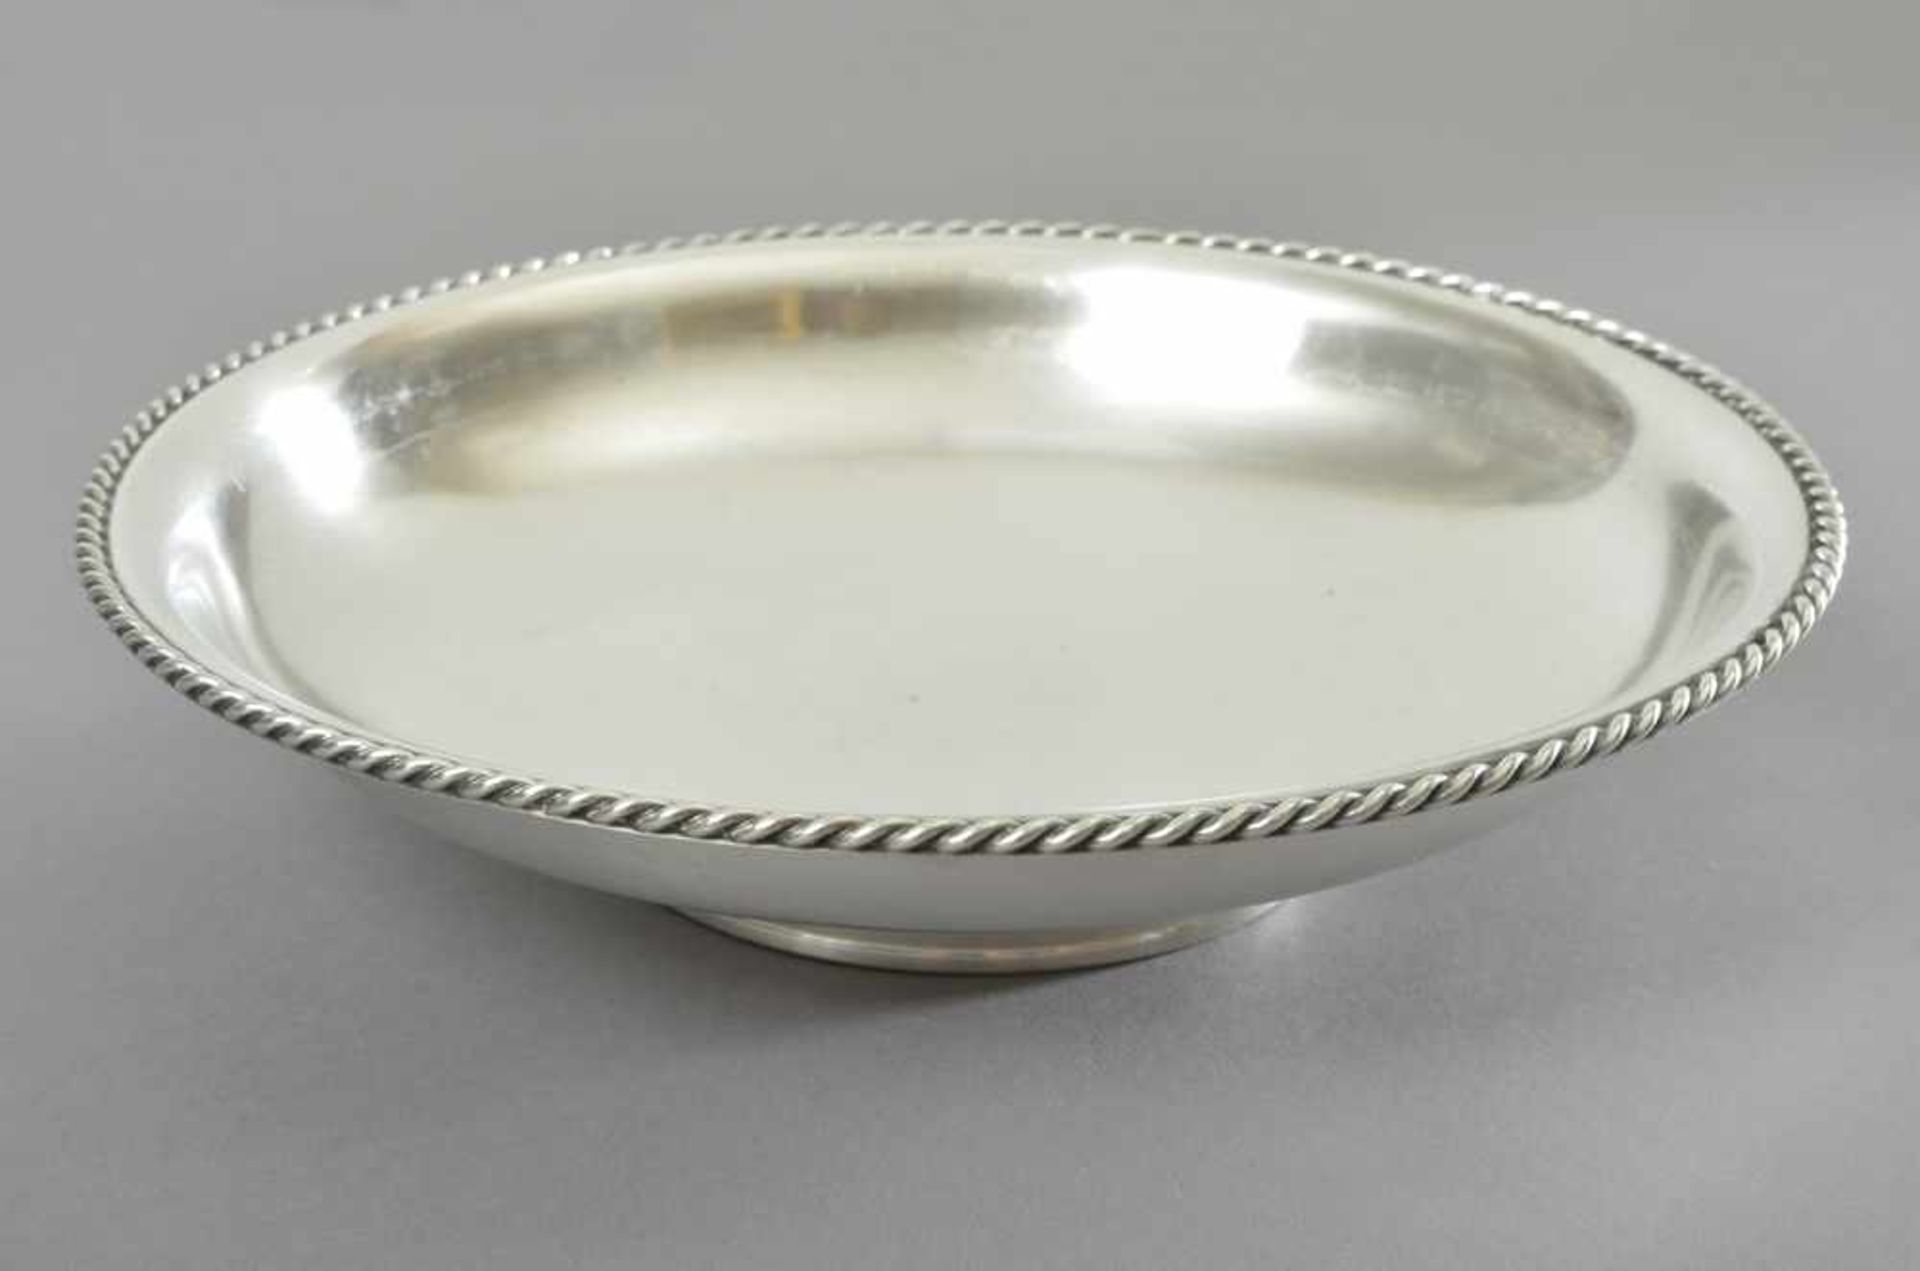 Runde Schale mit Kordelrand, Silber 835, 300g, Ø 22cm, zerkratzt